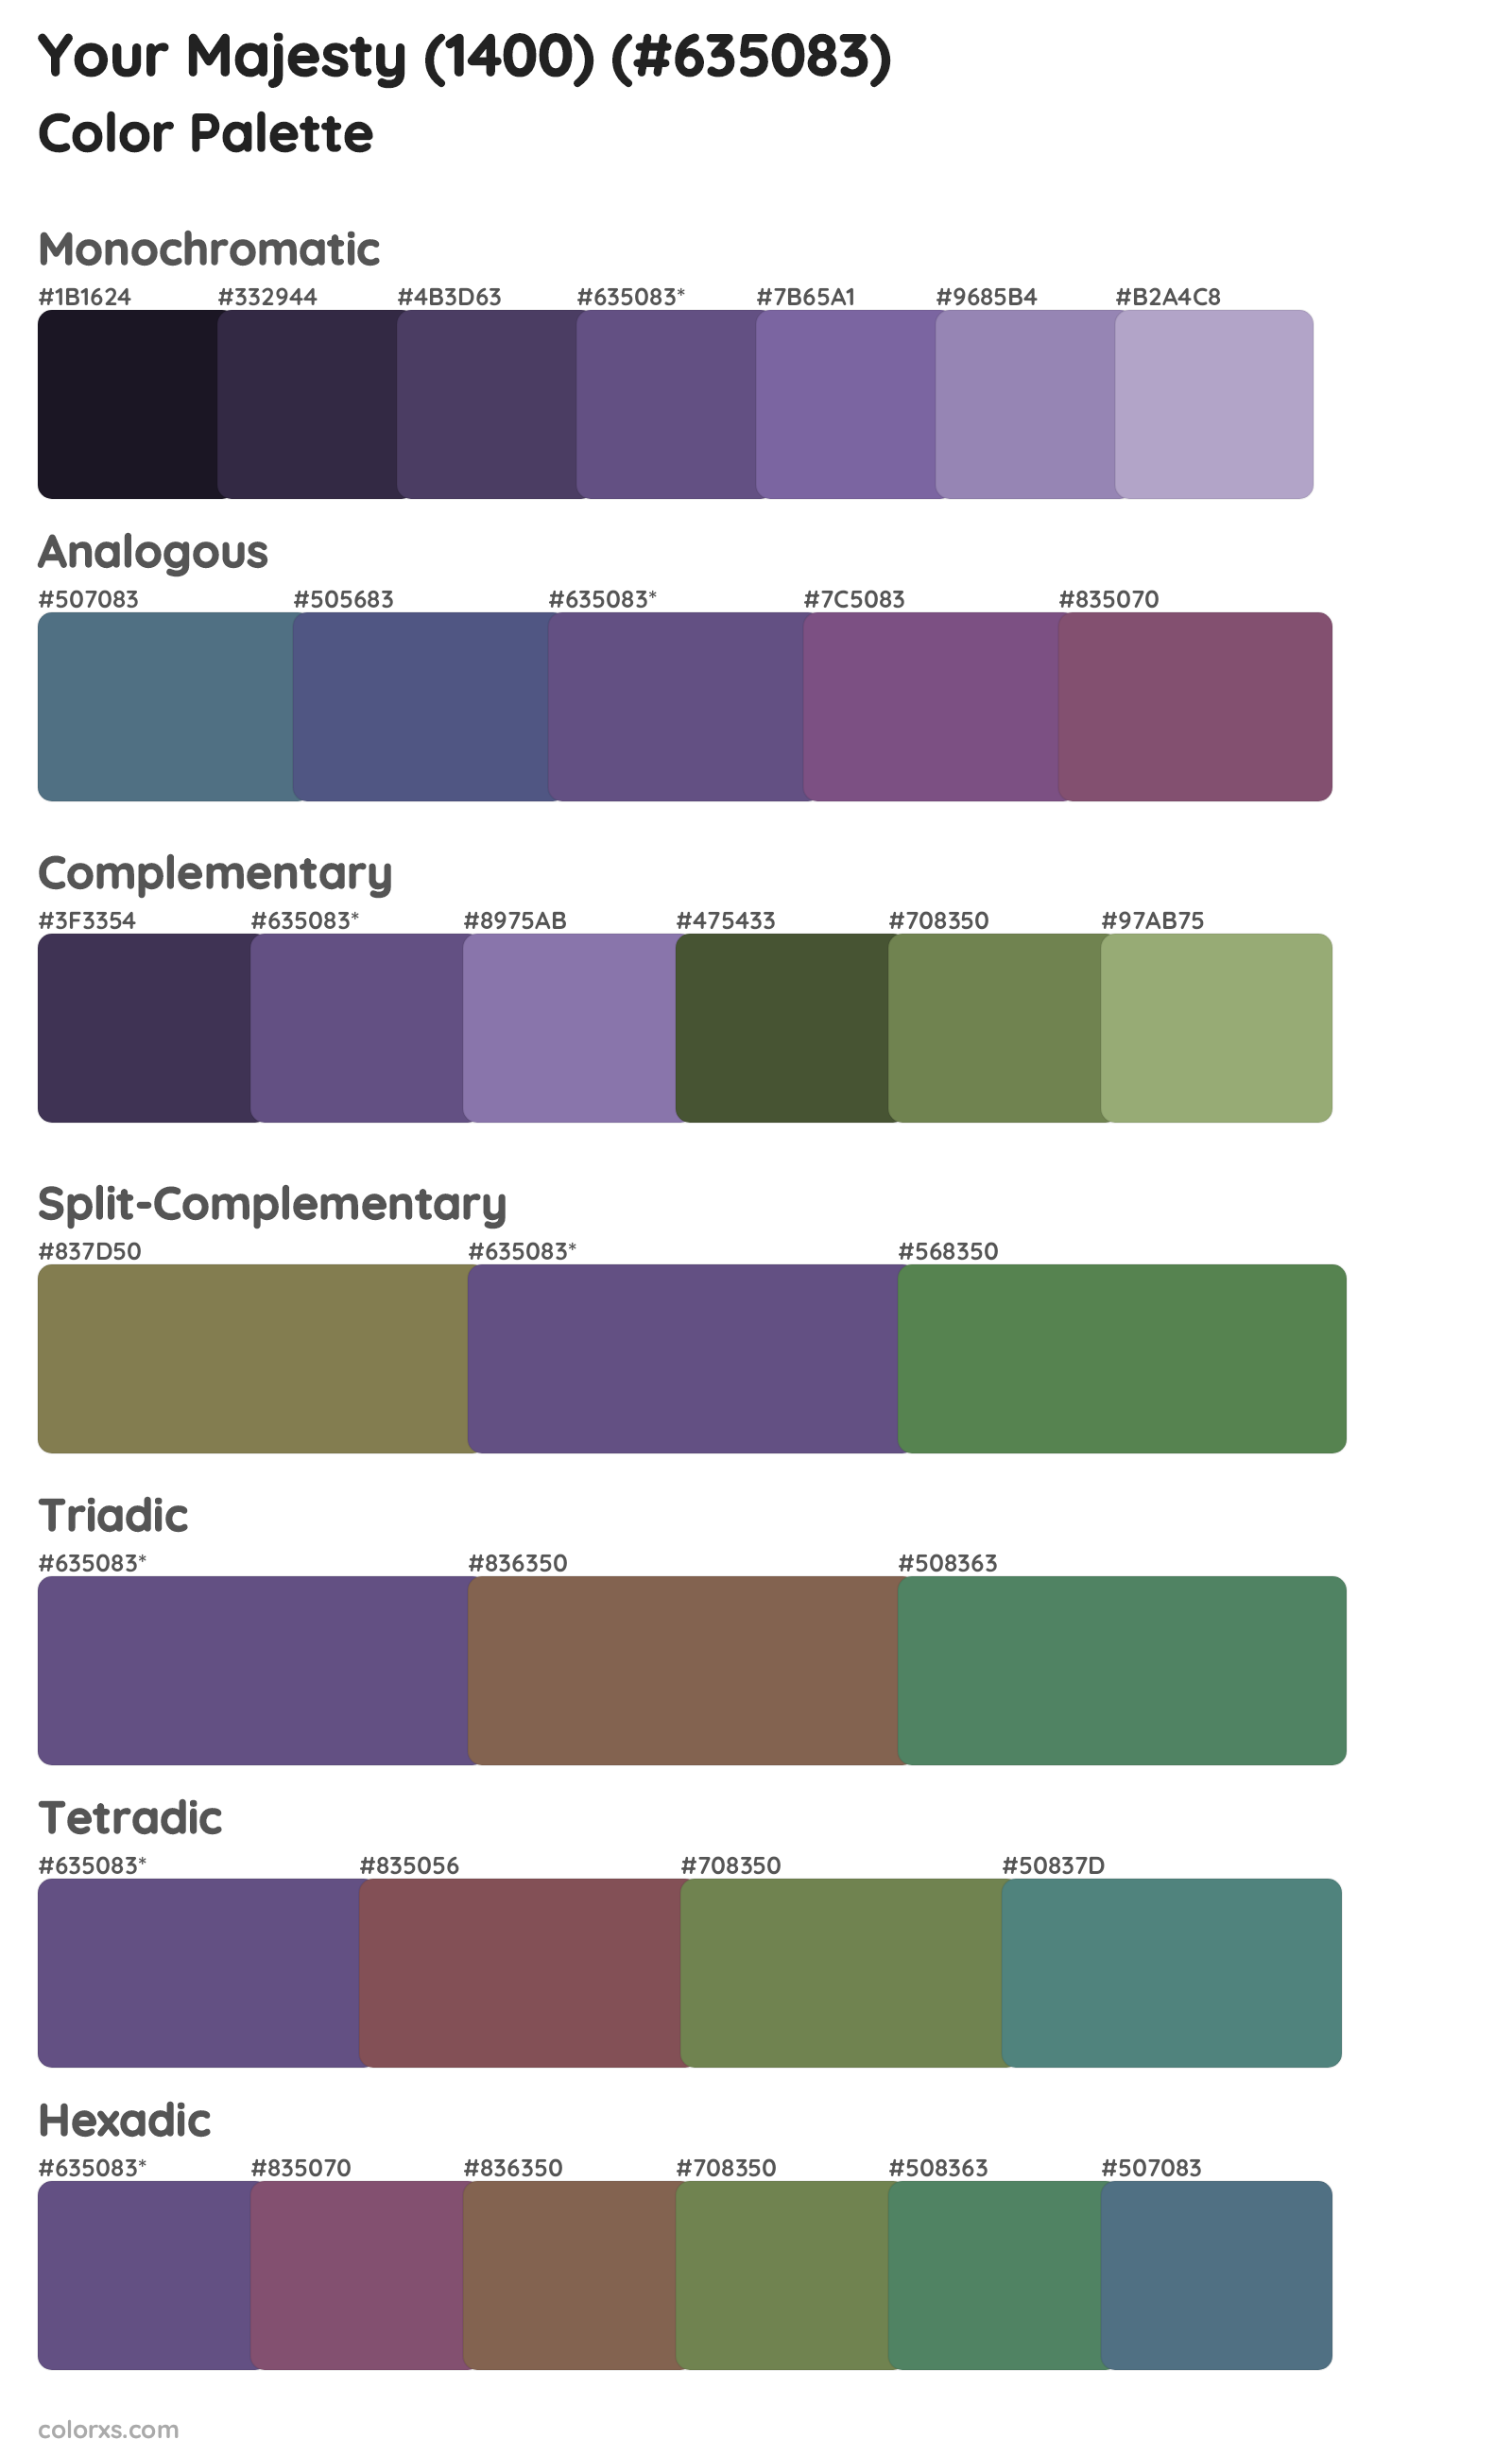 Your Majesty (1400) Color Scheme Palettes